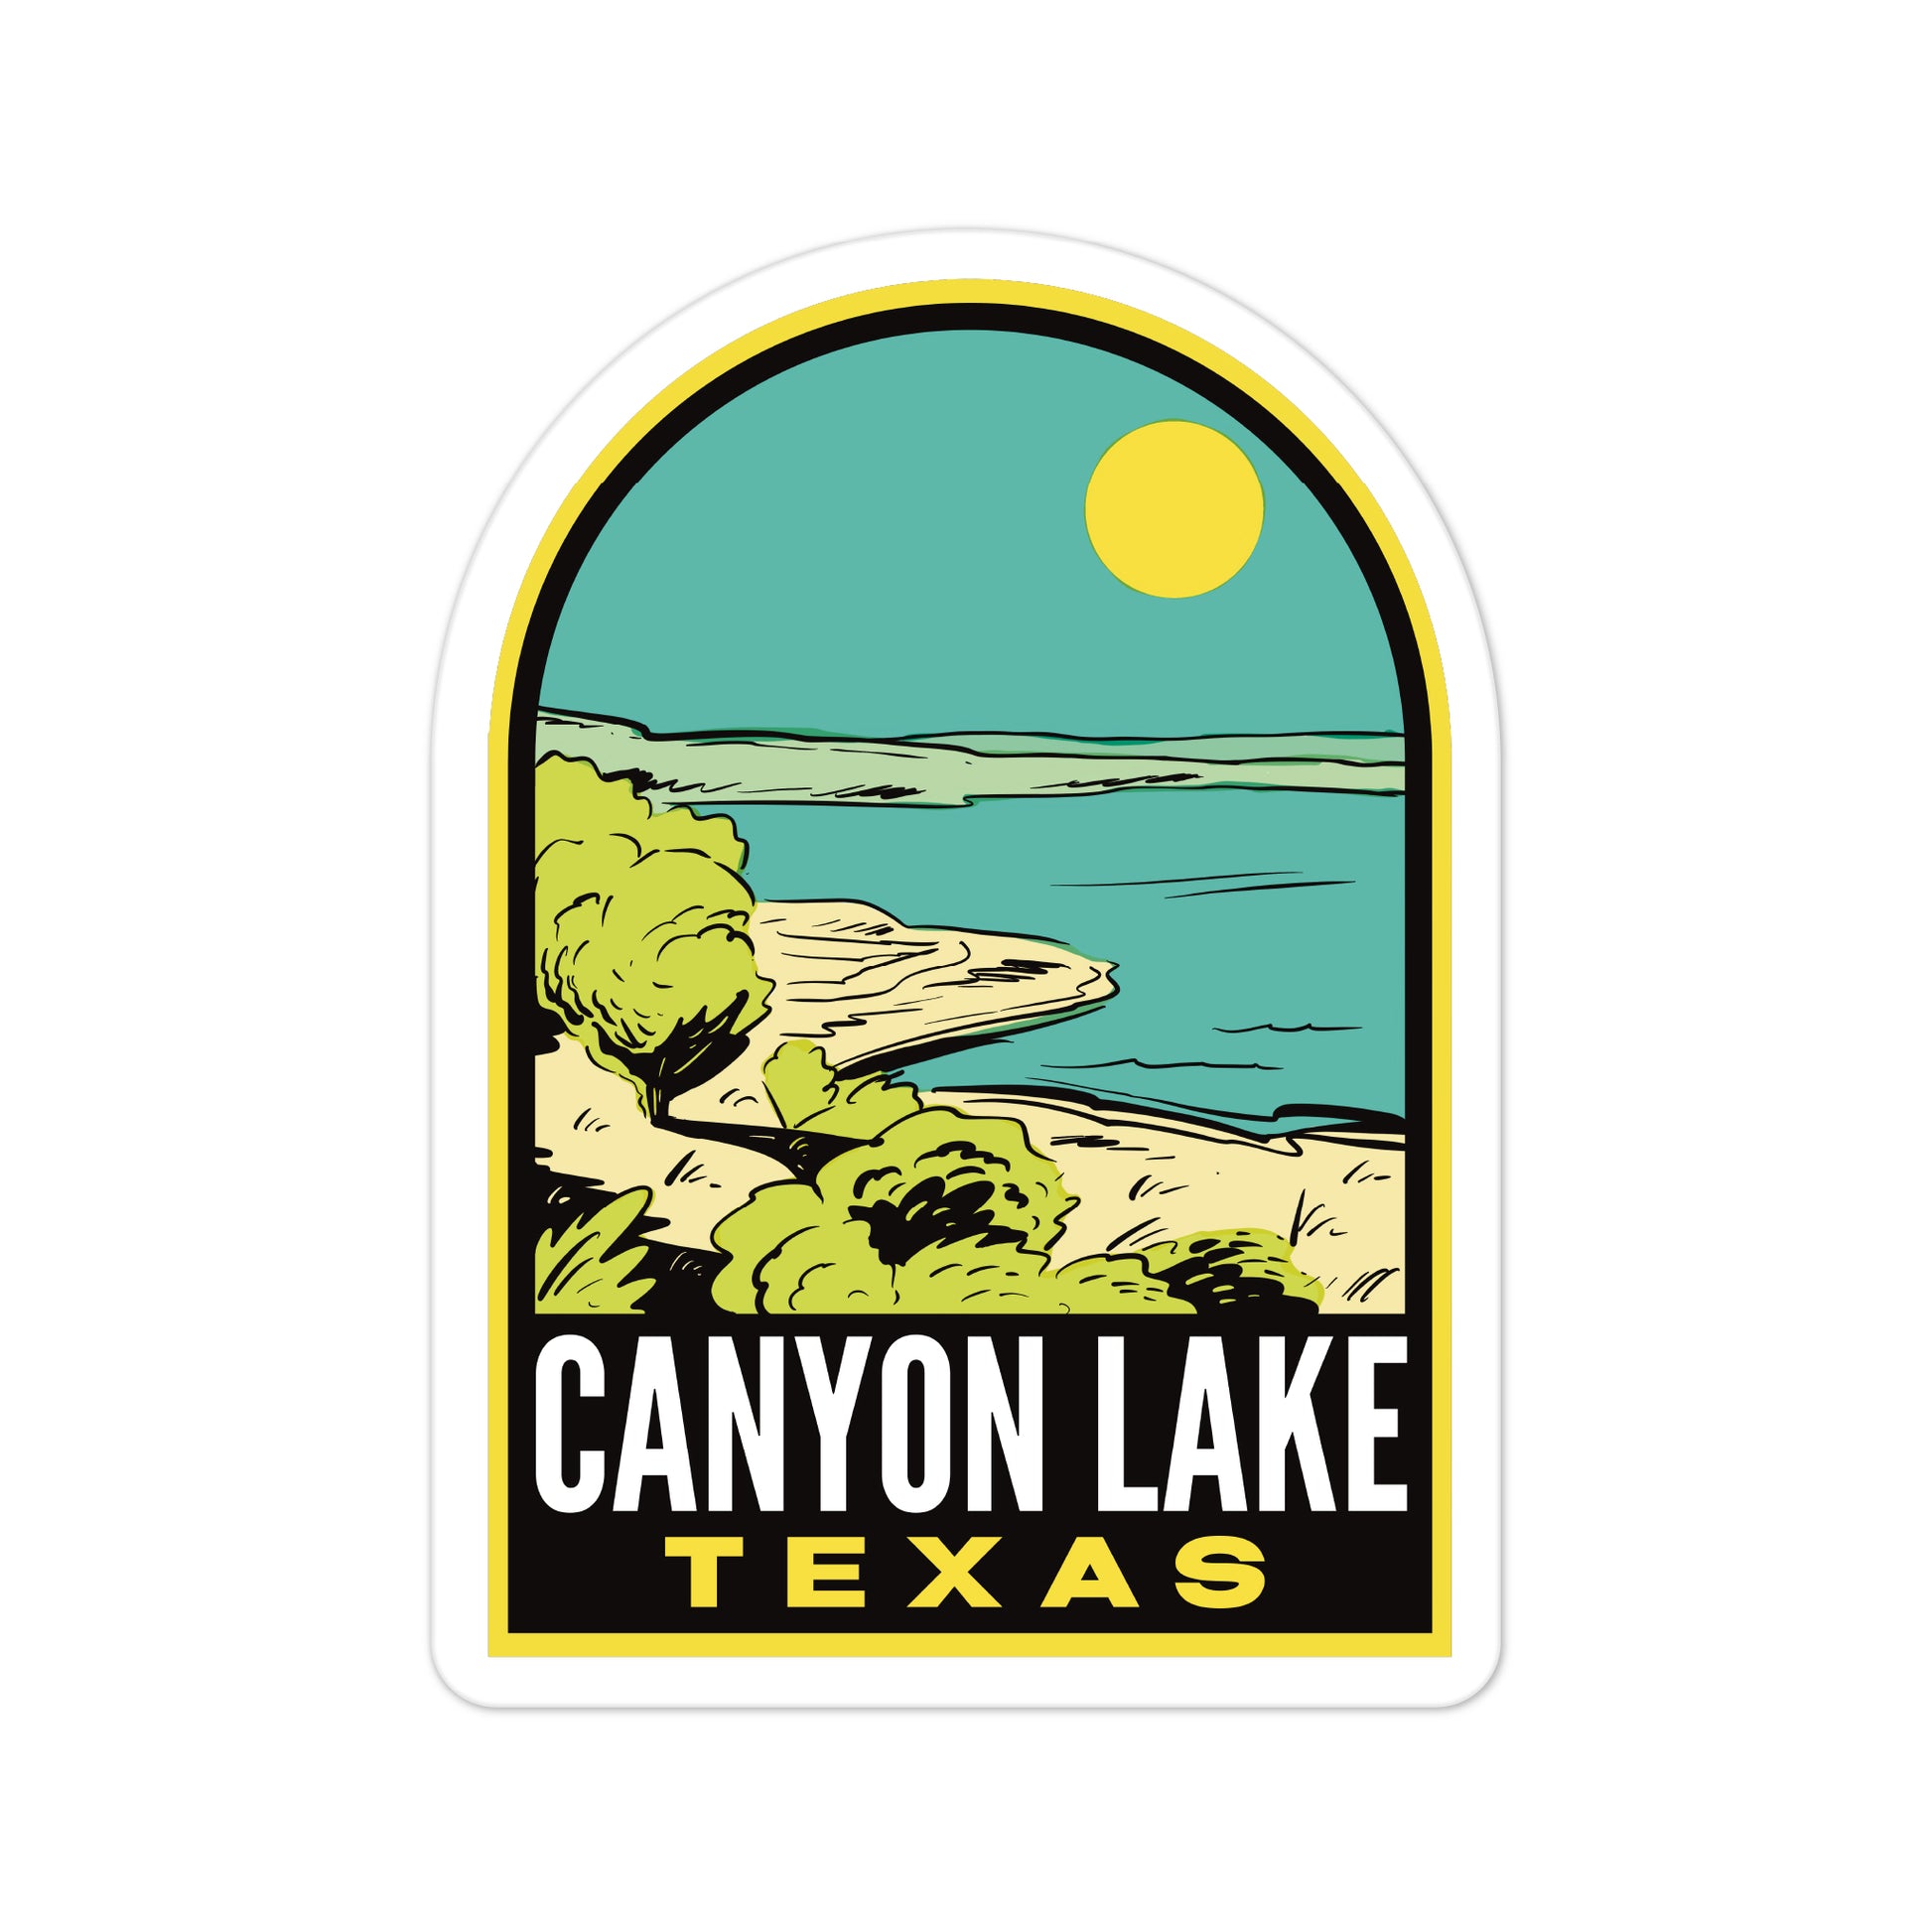 A sticker of Canyon Lake